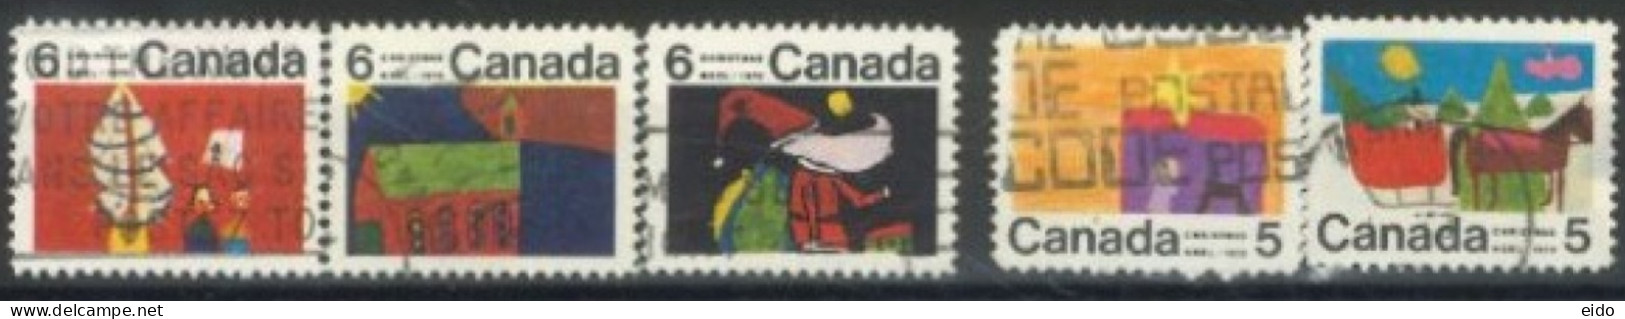 CANADA - 1970, CHRISTMAS STAMPS SET OF 5, USED. - Usados